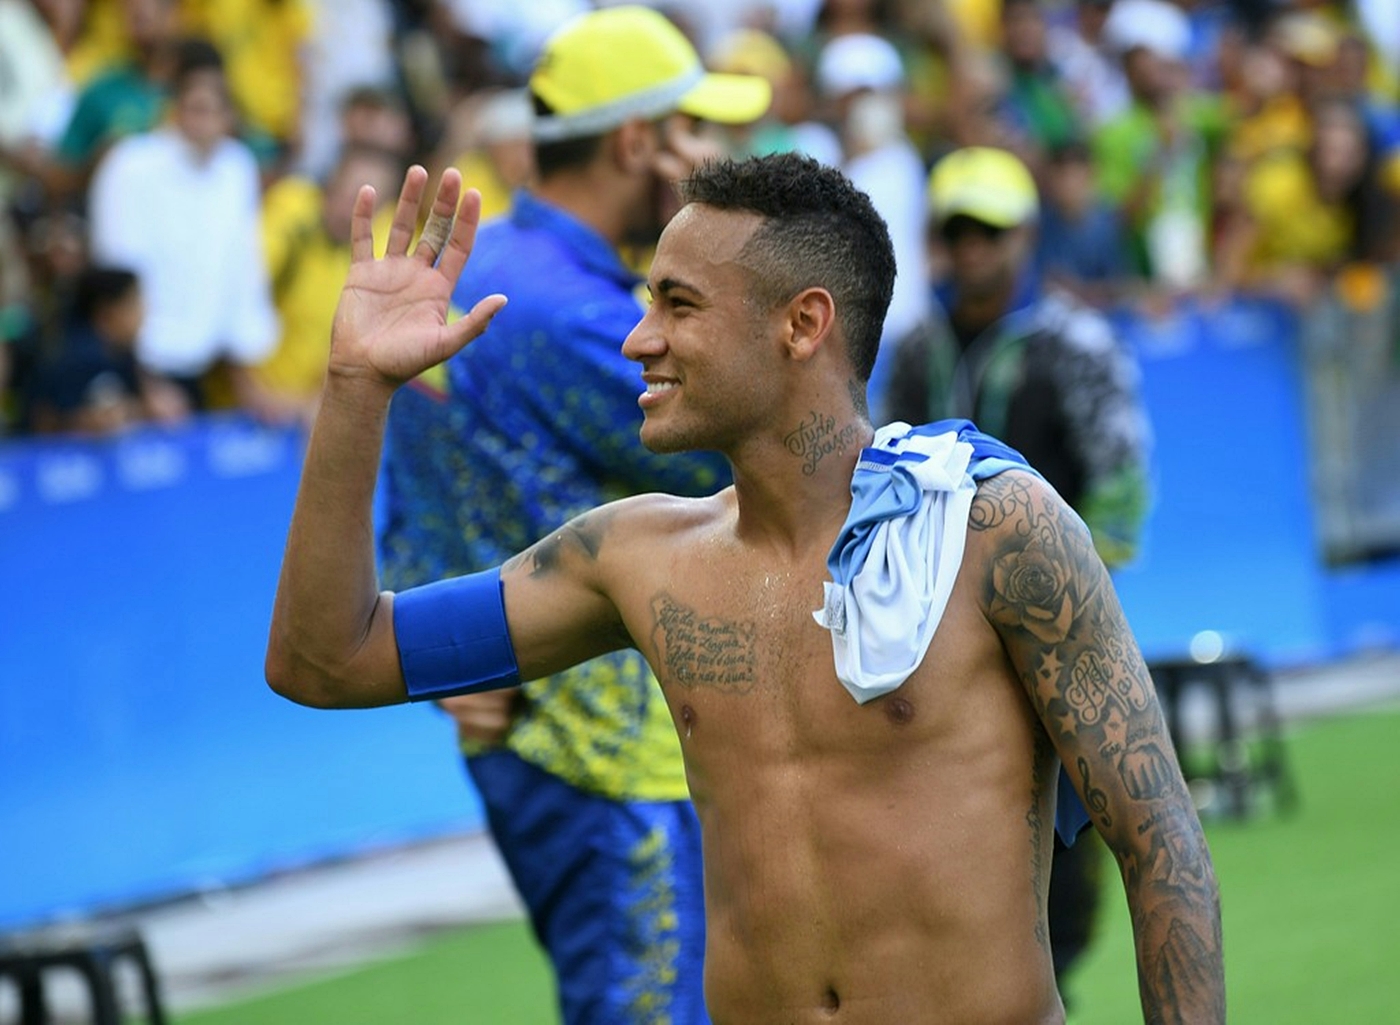 WE LOVE HOT GUYS: Neymar